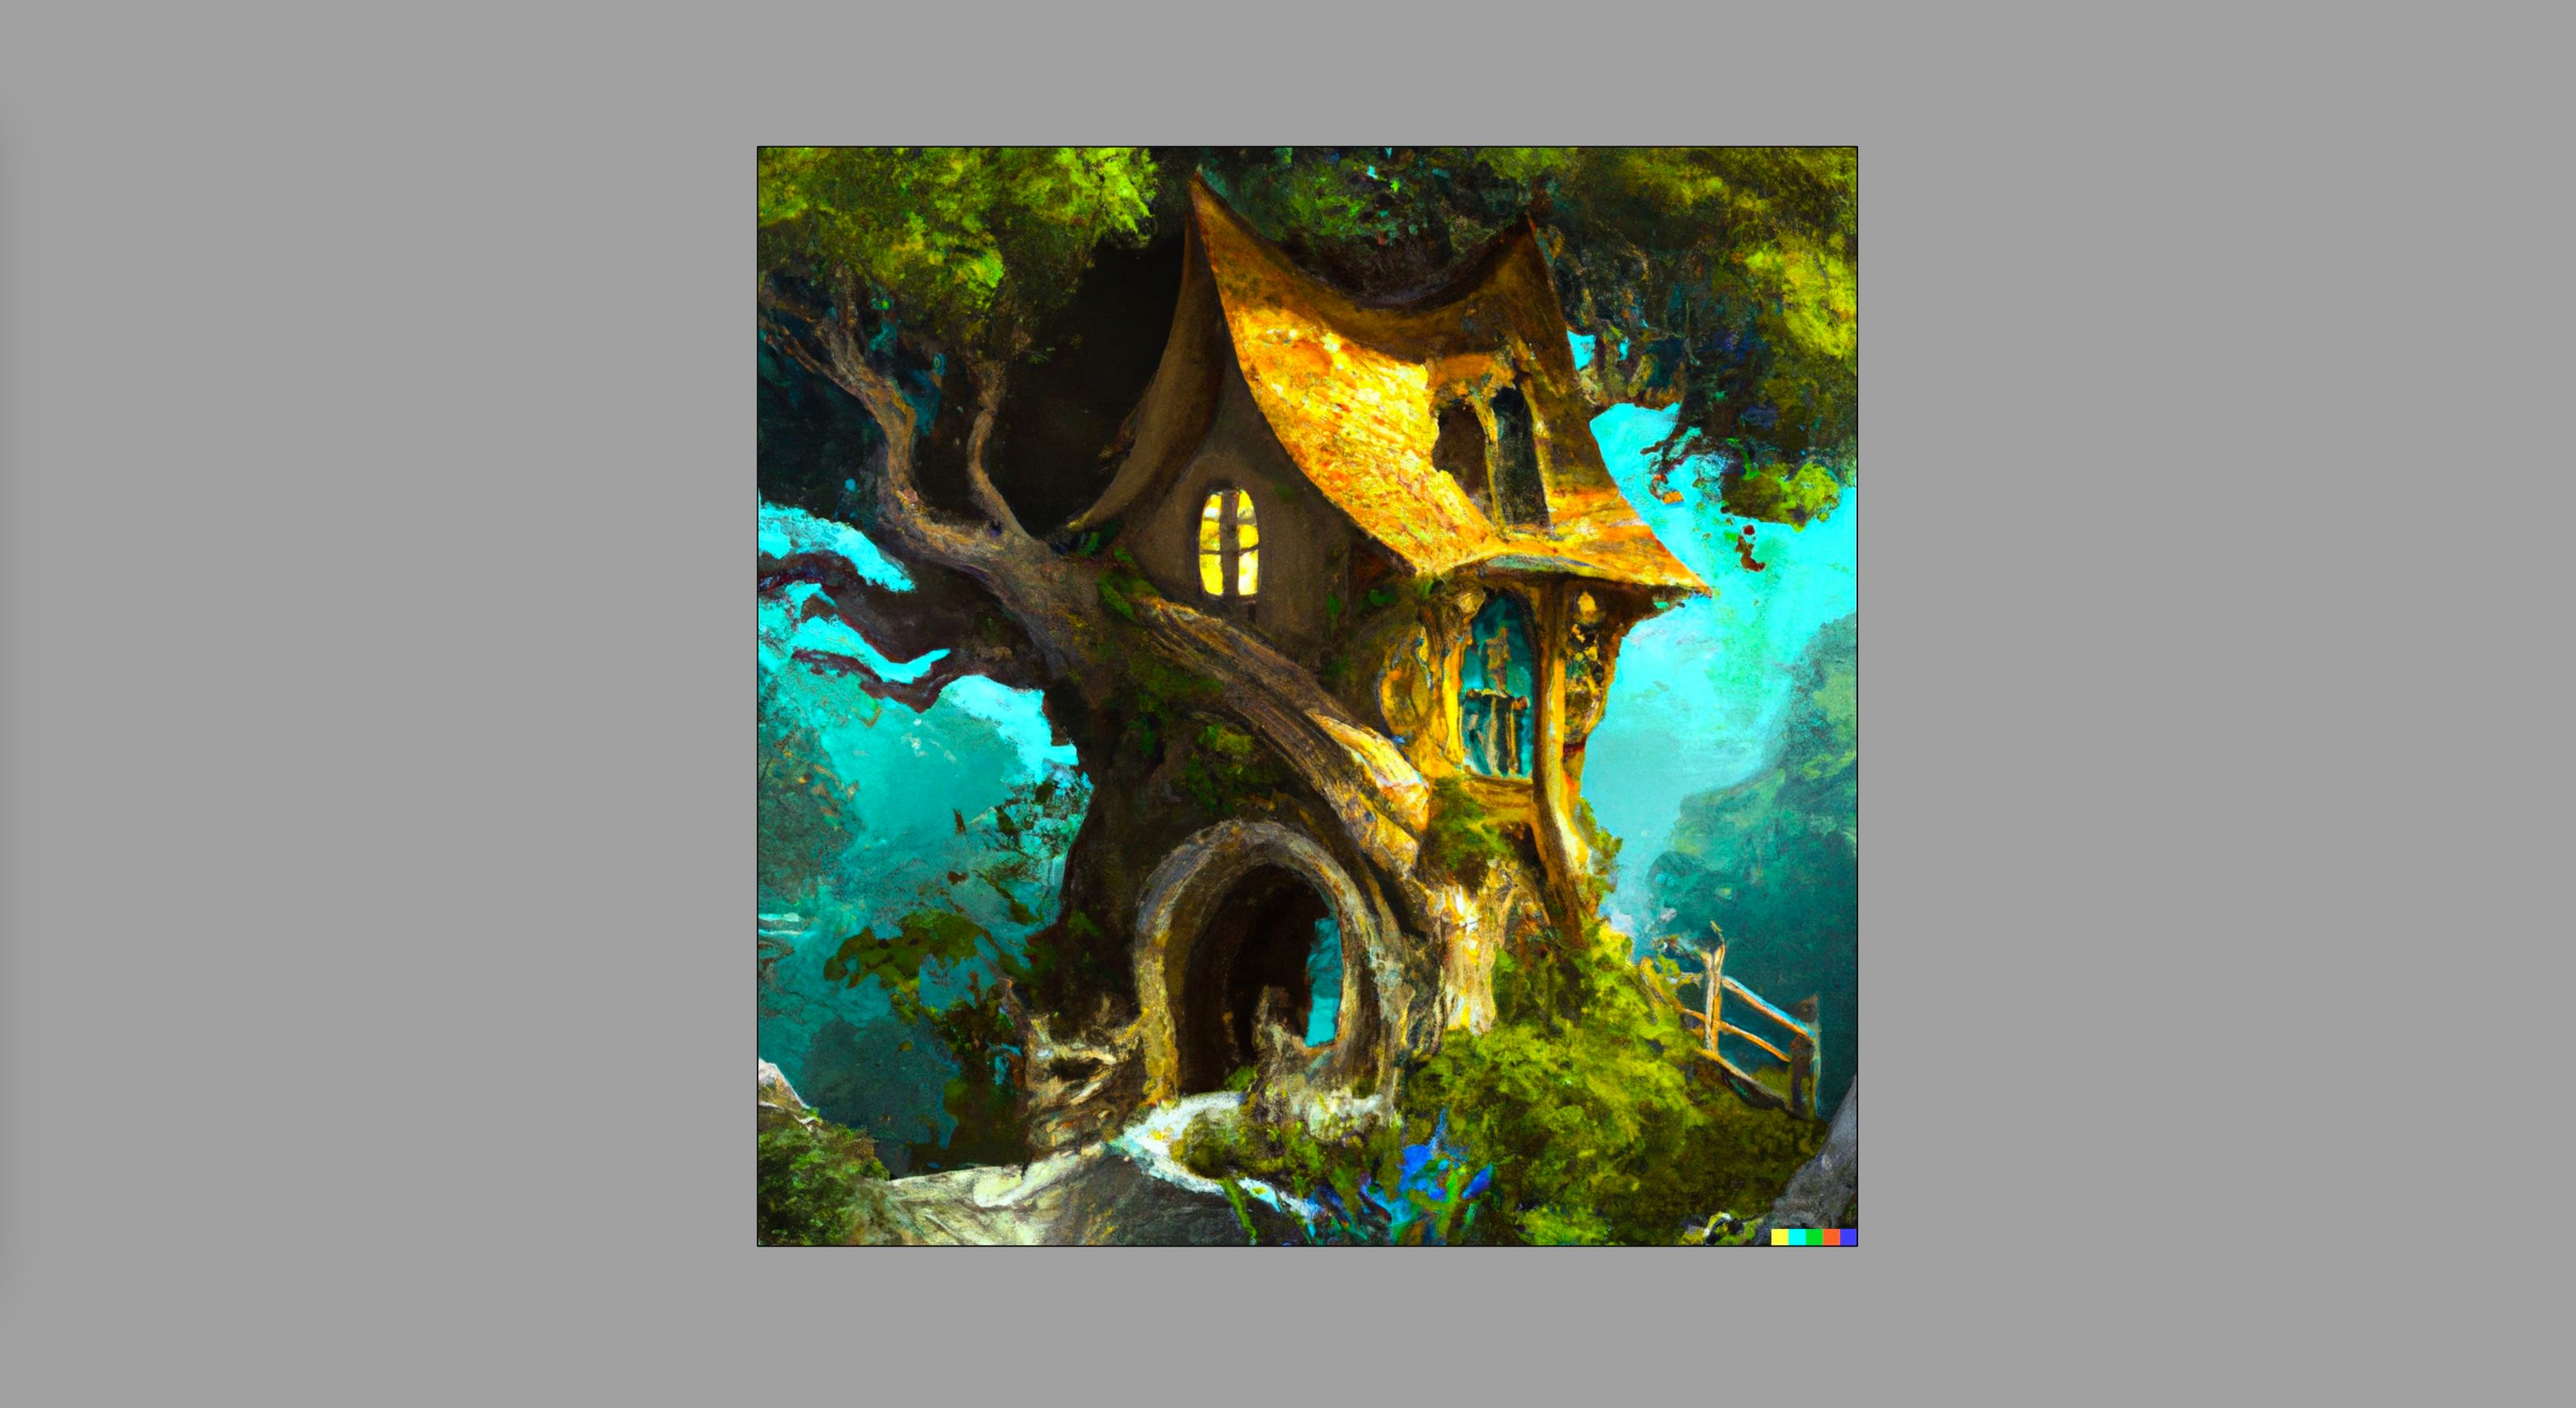 Une maison dans un arbre dans le style de l'art fantastique, générée avec Dall-E